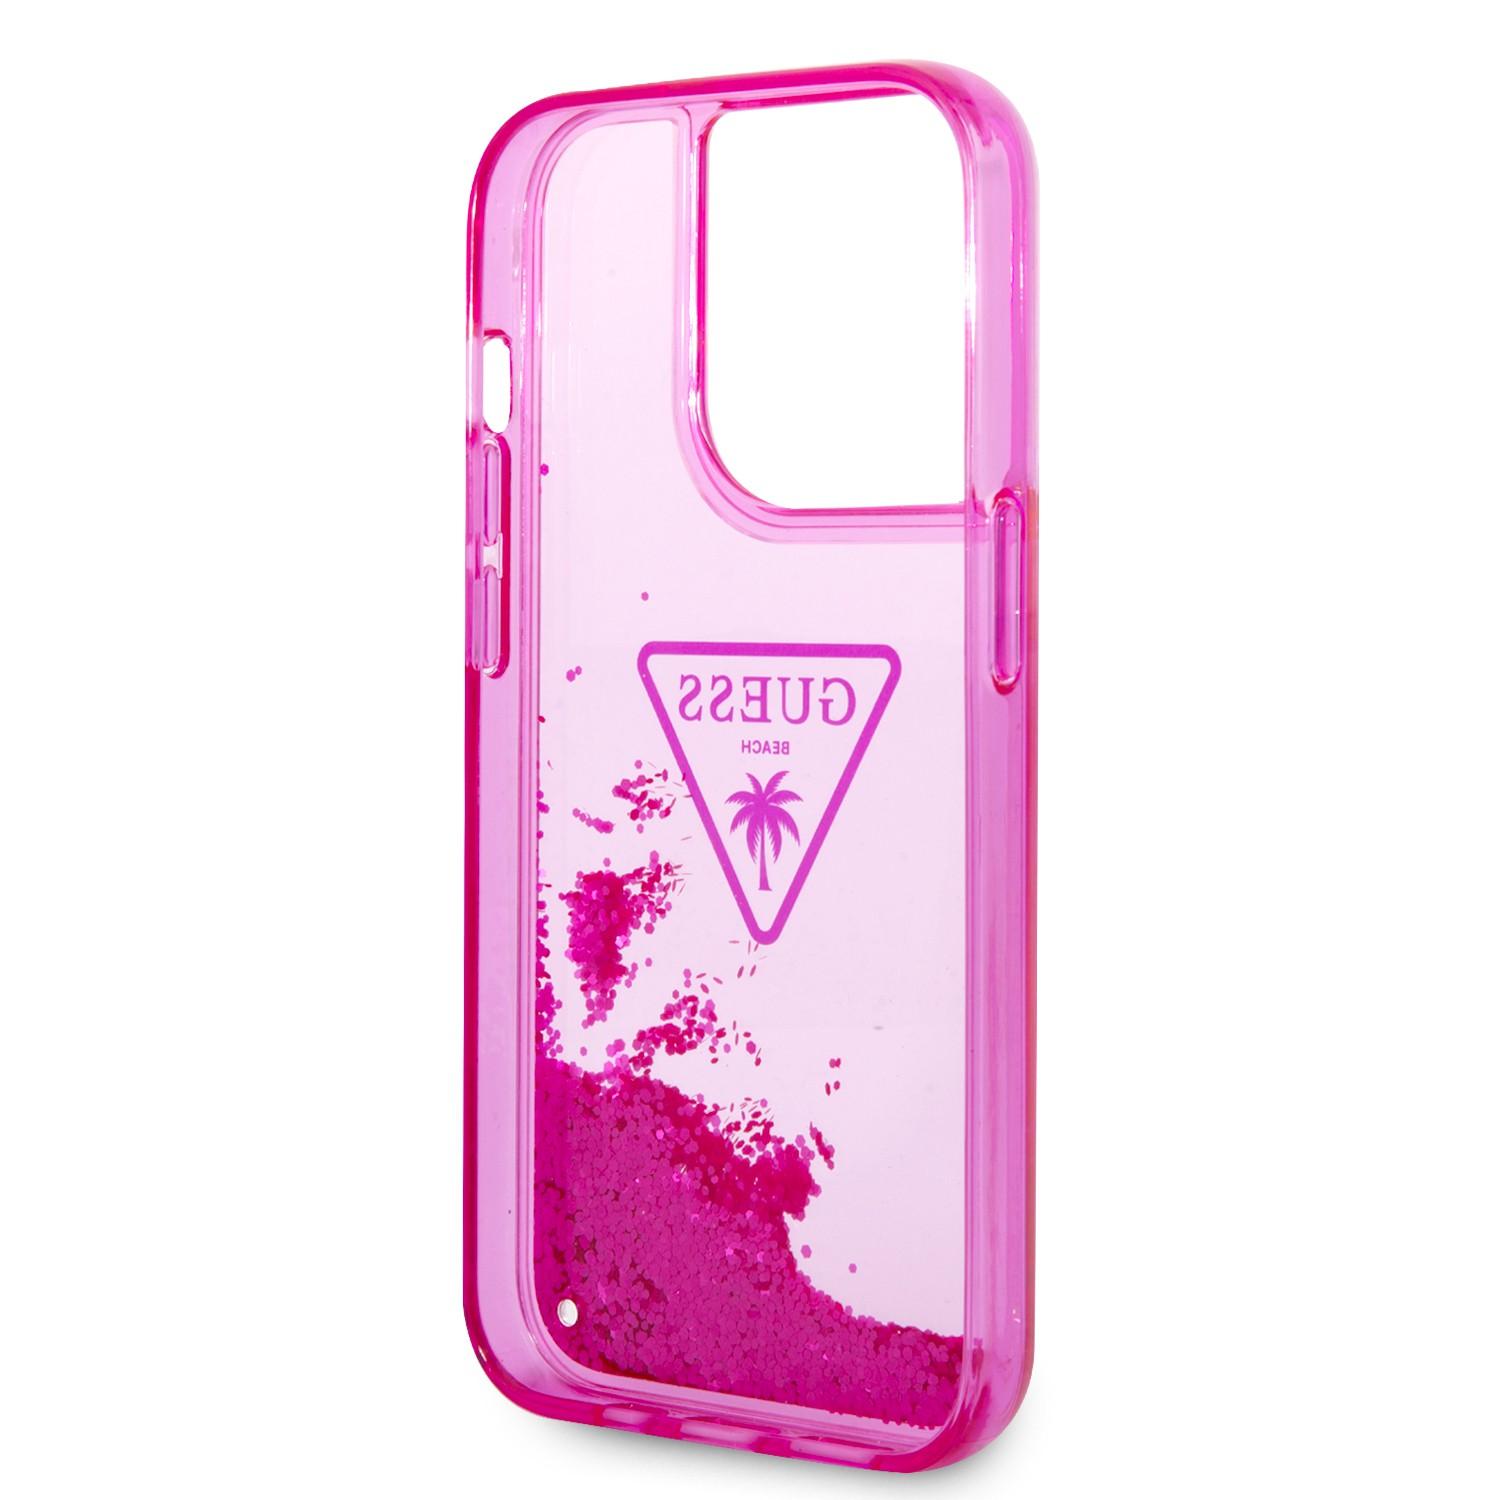 كفر ايفون 14 برو زهر جيس Guess Liquid Glitter Case With Translucent Triangle Logo For iPhone 14 Pro Pink - cG9zdDoxMzg0OTMx